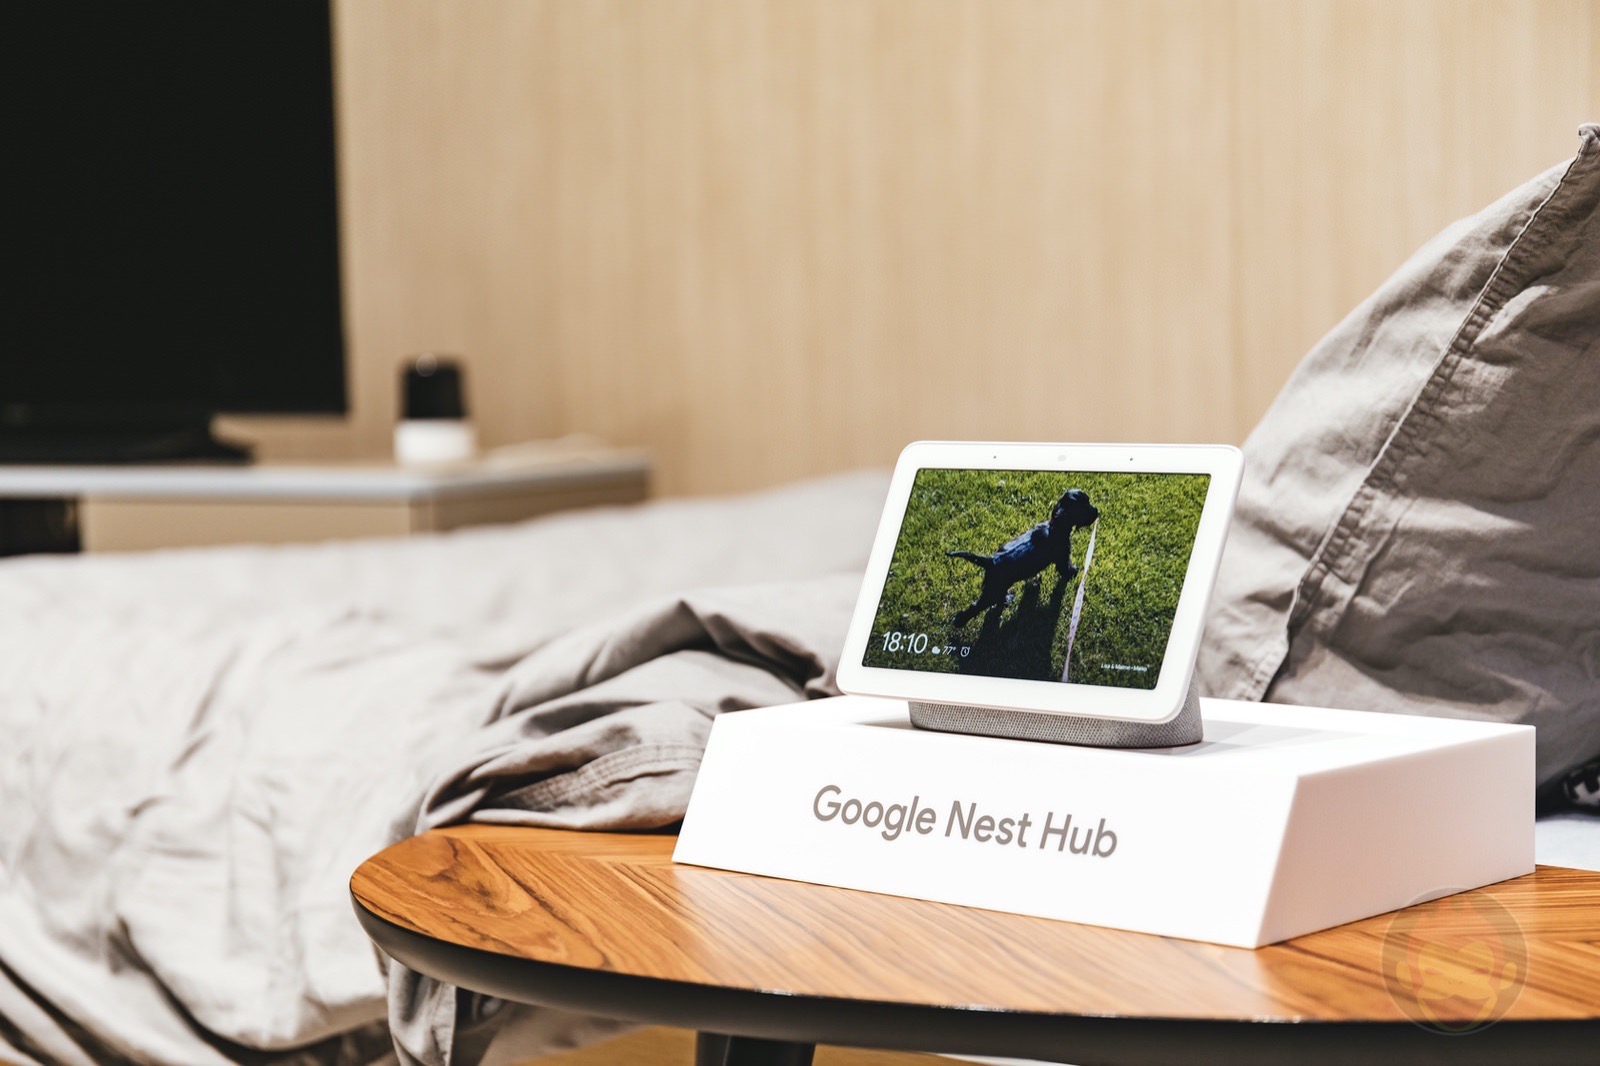 Google-Nest-Hub-Hands-On-09.jpg